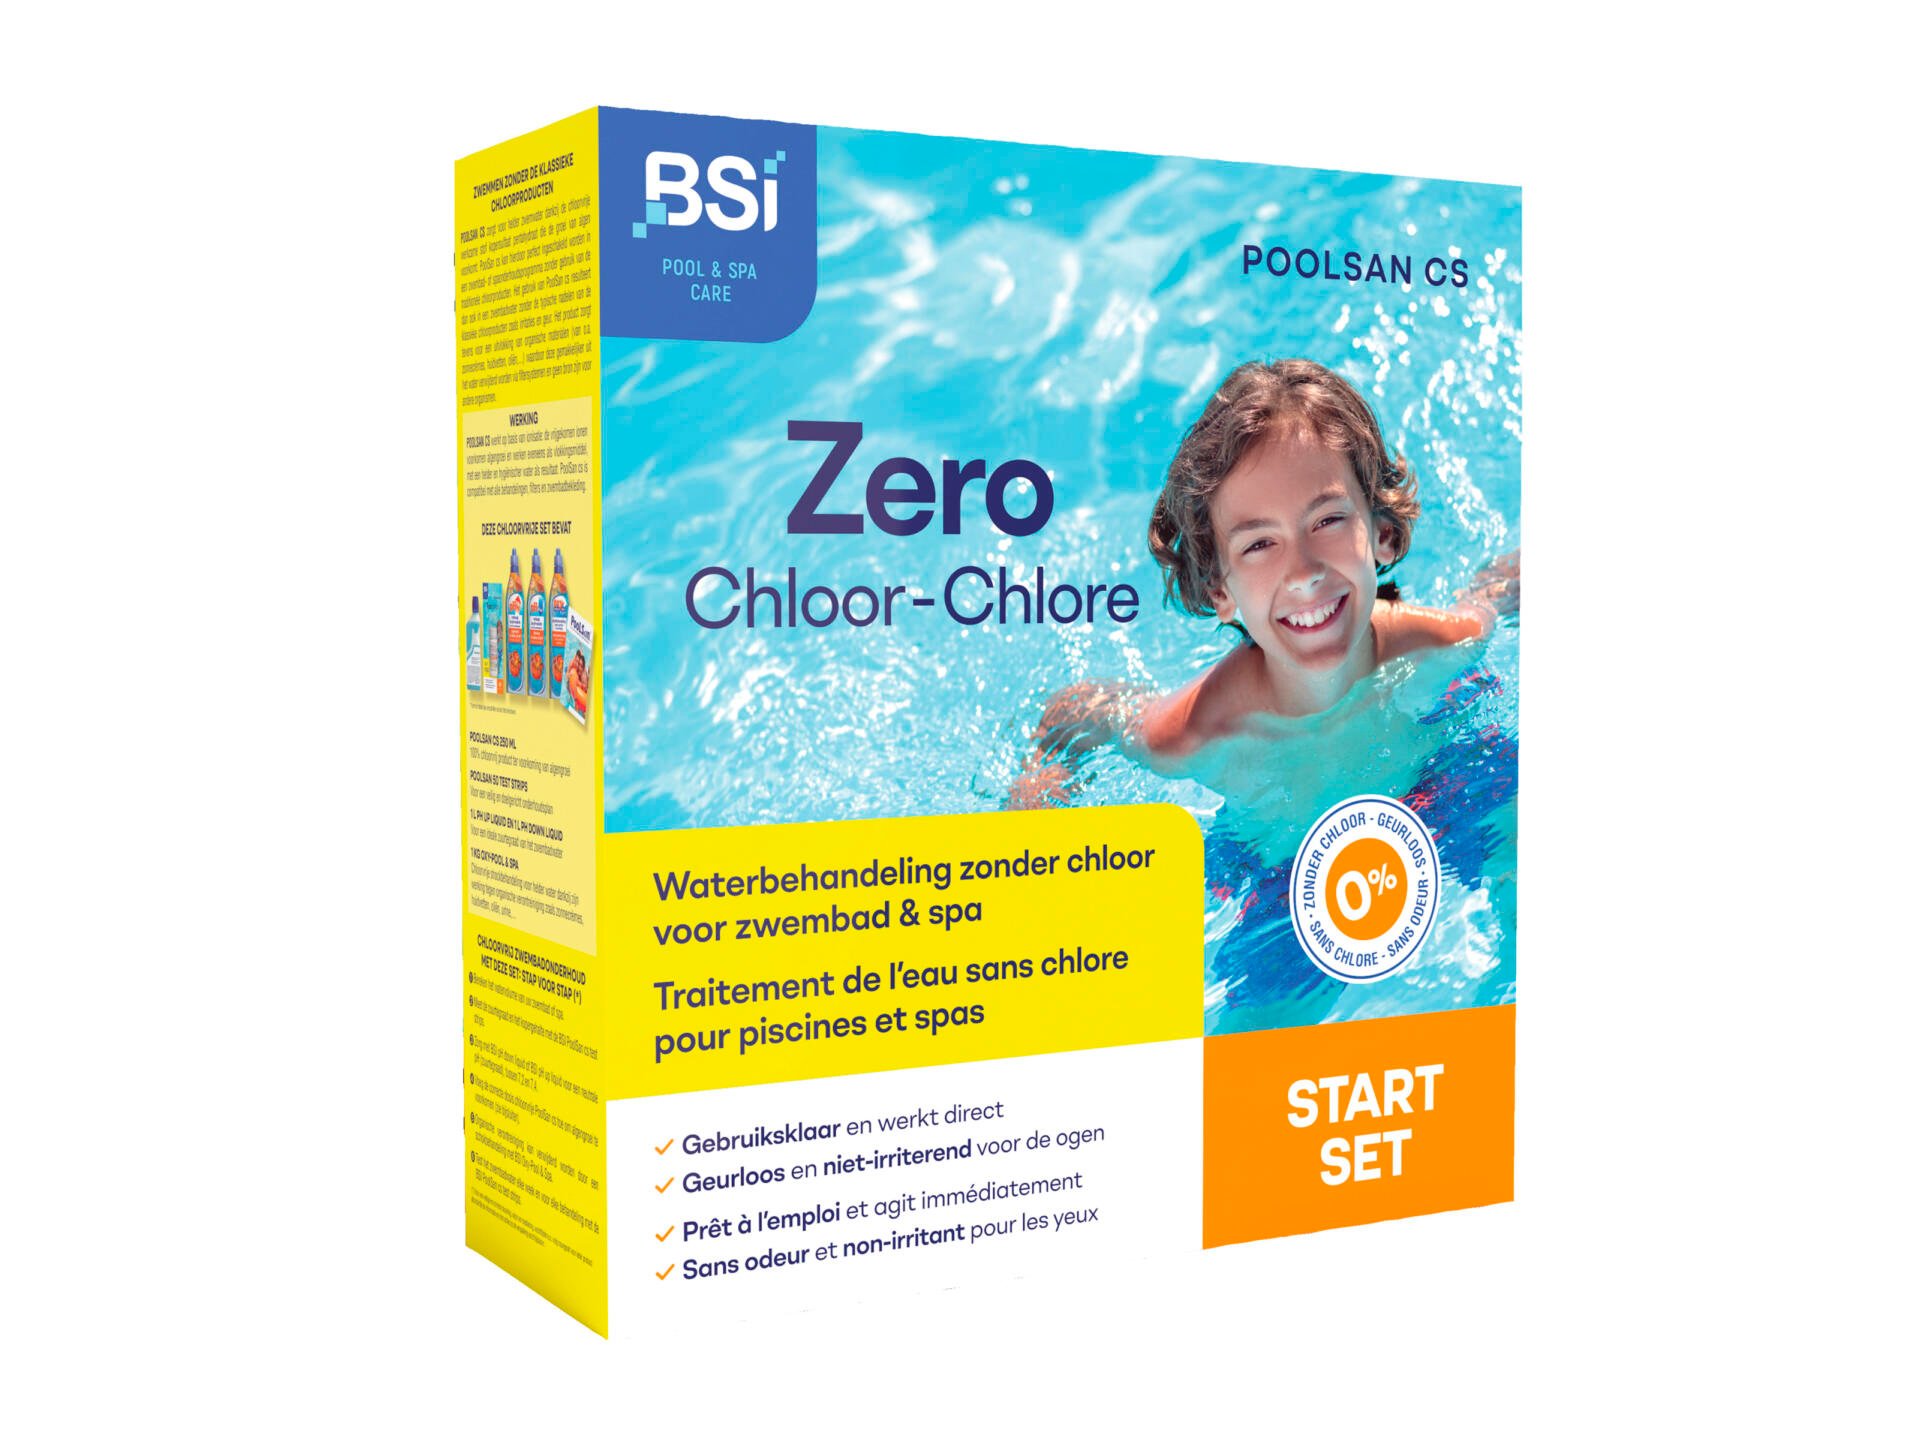 BSI PoolSan cs Zero chloor start set waterbehandeling